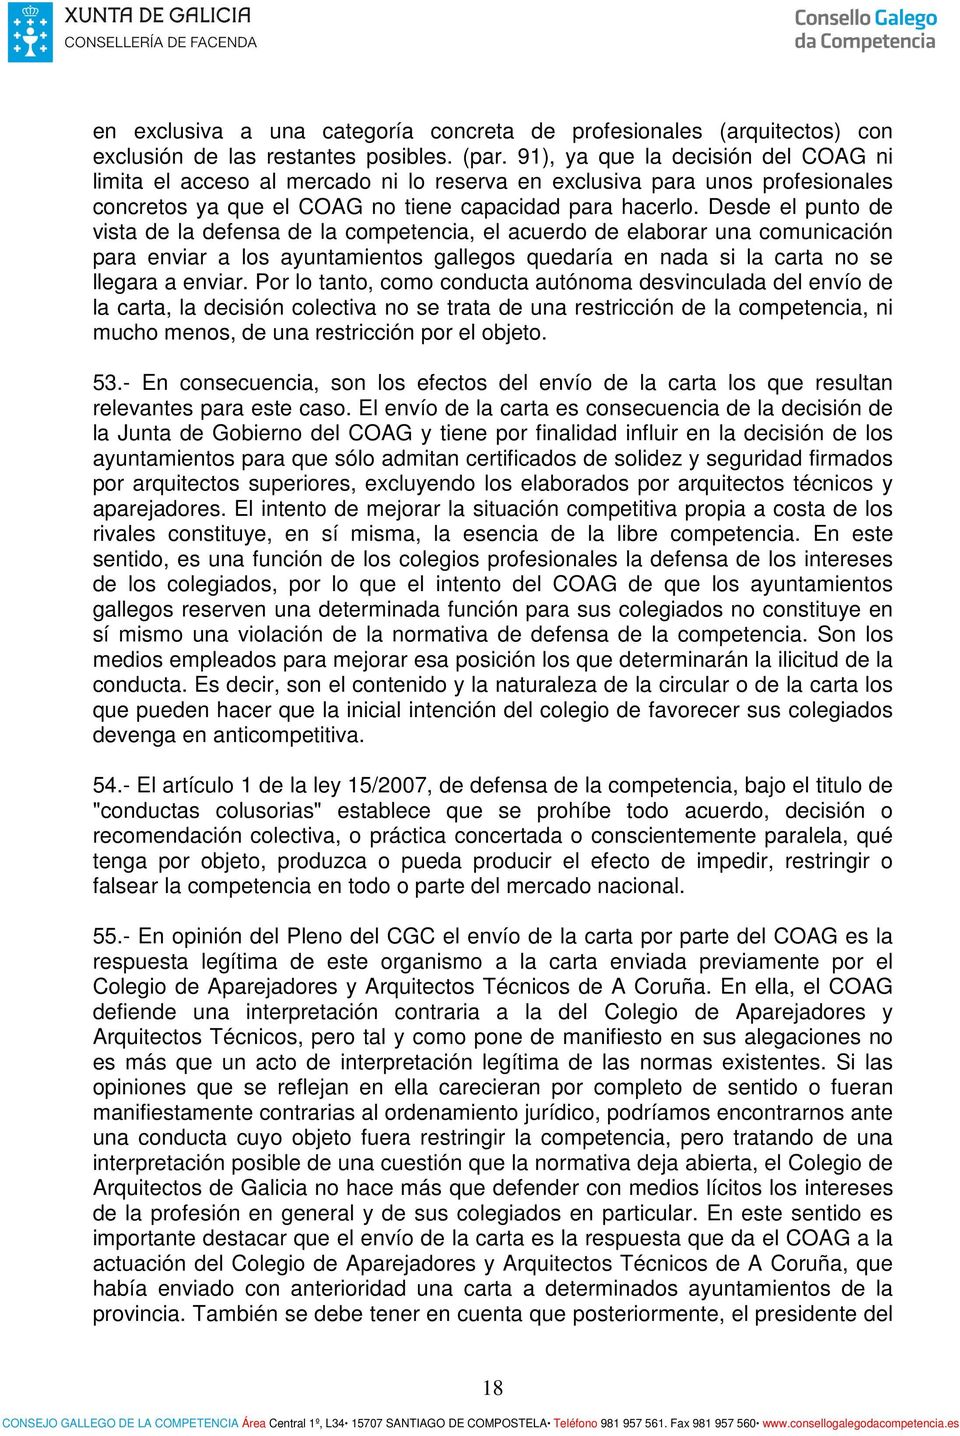 Desde el punto de vista de la defensa de la competencia, el acuerdo de elaborar una comunicación para enviar a los ayuntamientos gallegos quedaría en nada si la carta no se llegara a enviar.